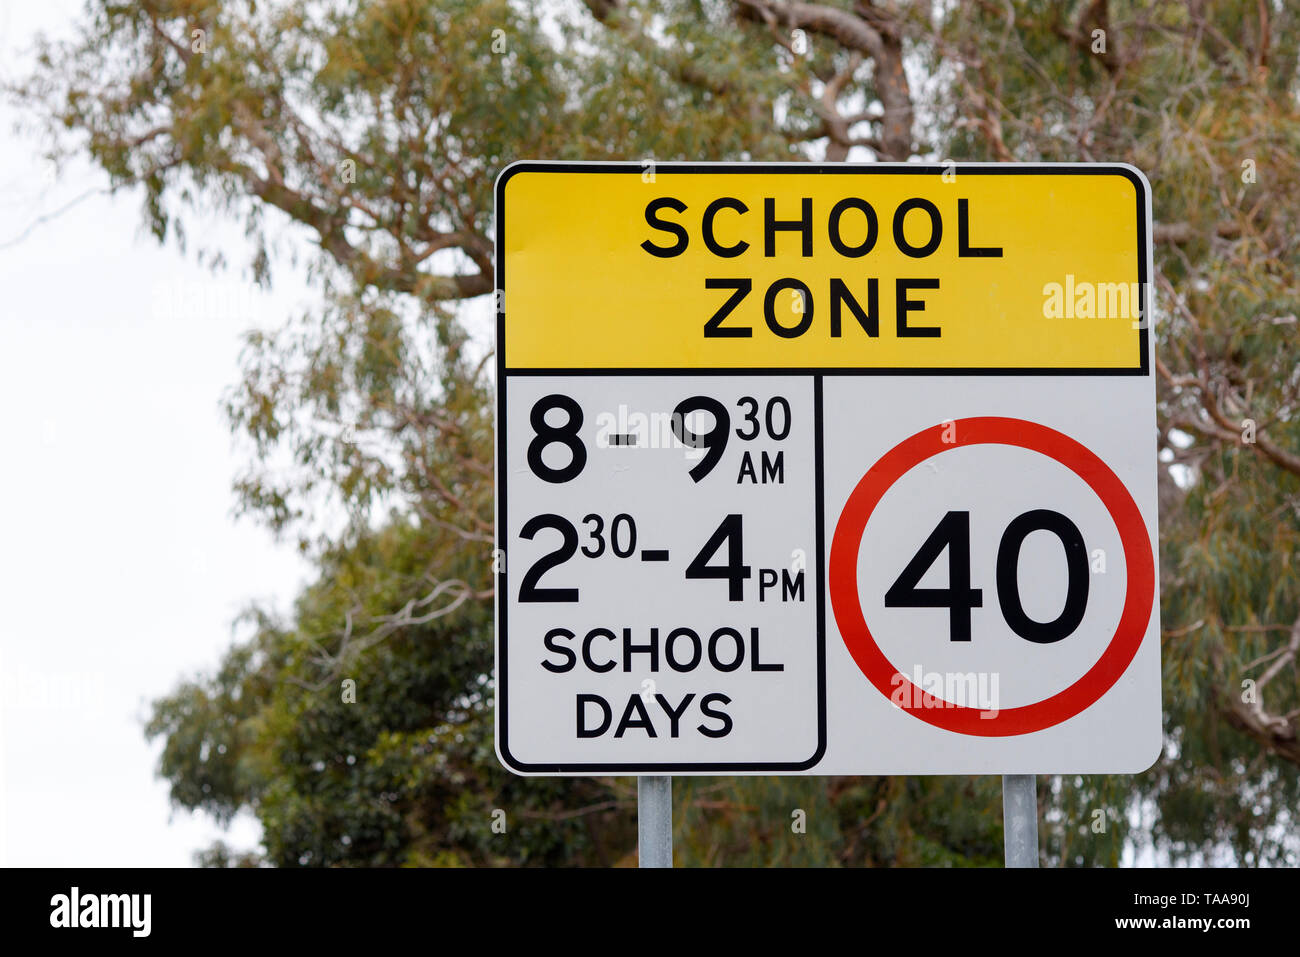 Australian road sign in school zone avec limite de vitesse 40 fois identification il est appliqué, Victoria Australie Banque D'Images